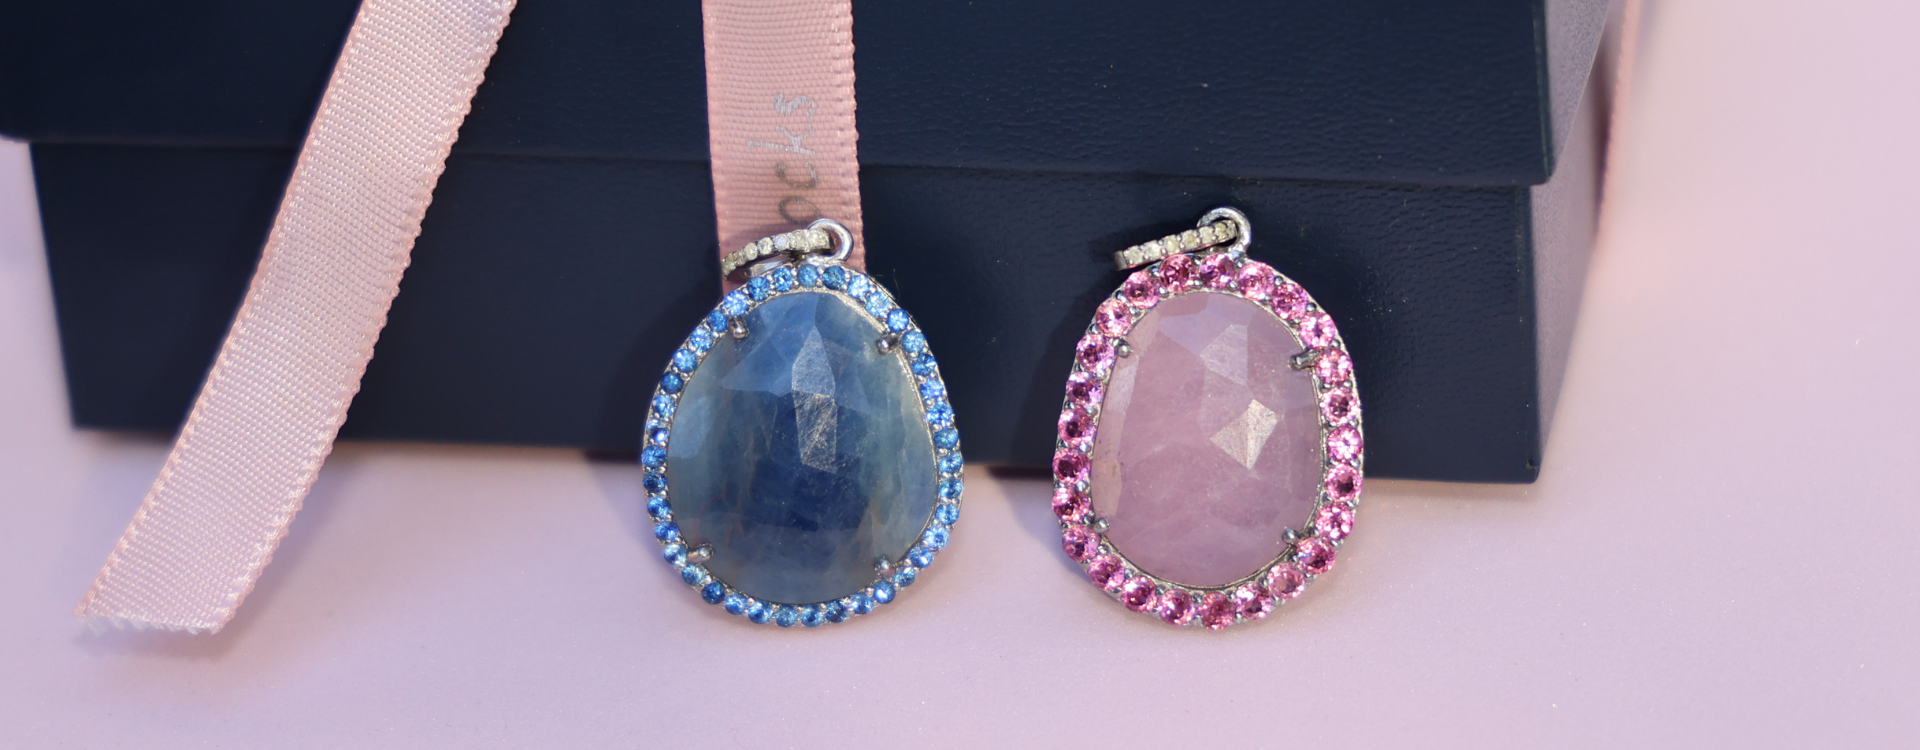 Luxury Ulka Rocks gemstone pendants